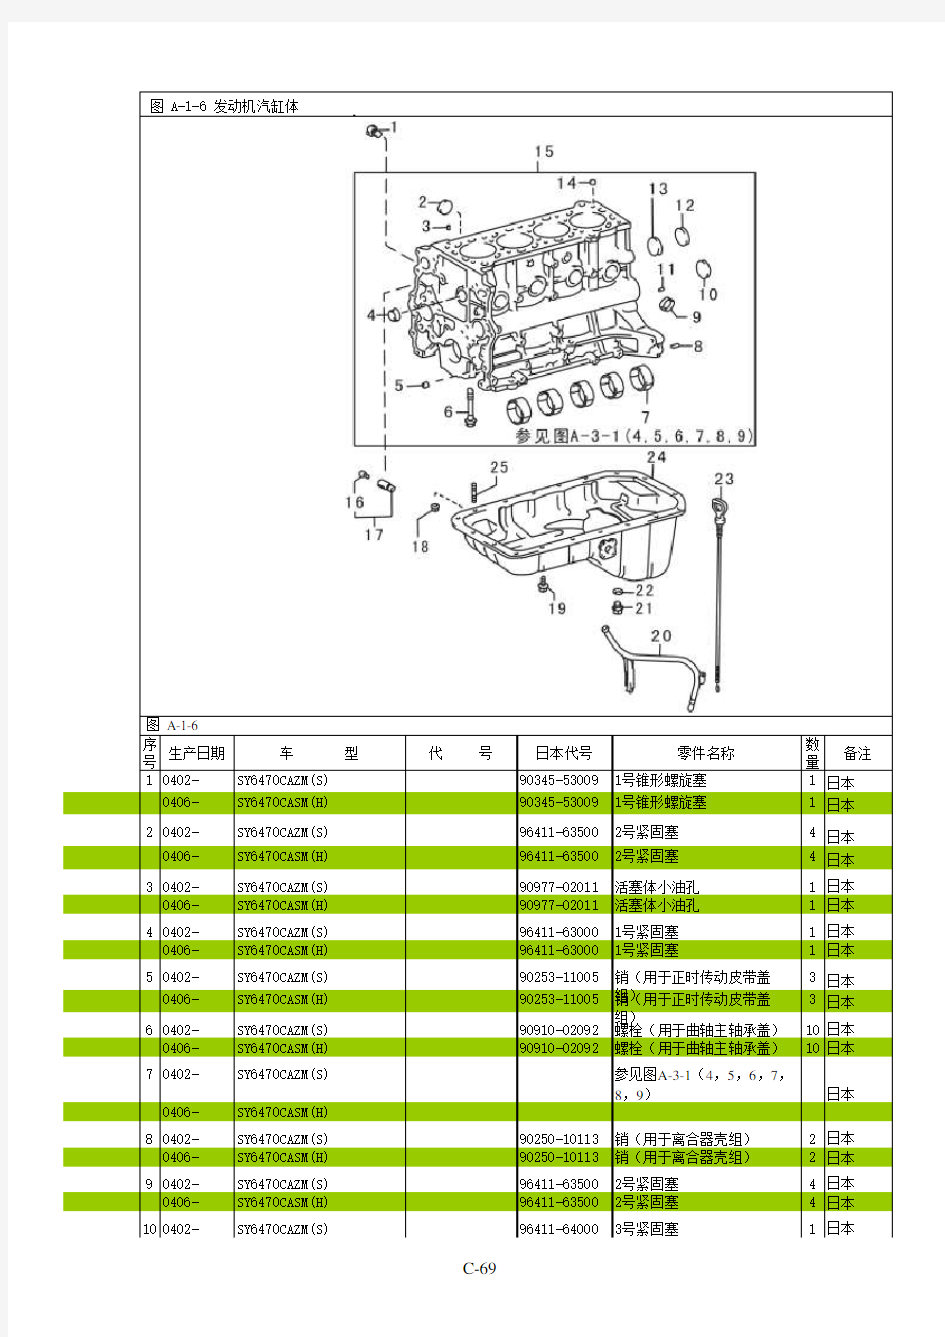 阁瑞斯零部件图册 发动机 图 A-1-6   发动机汽缸体